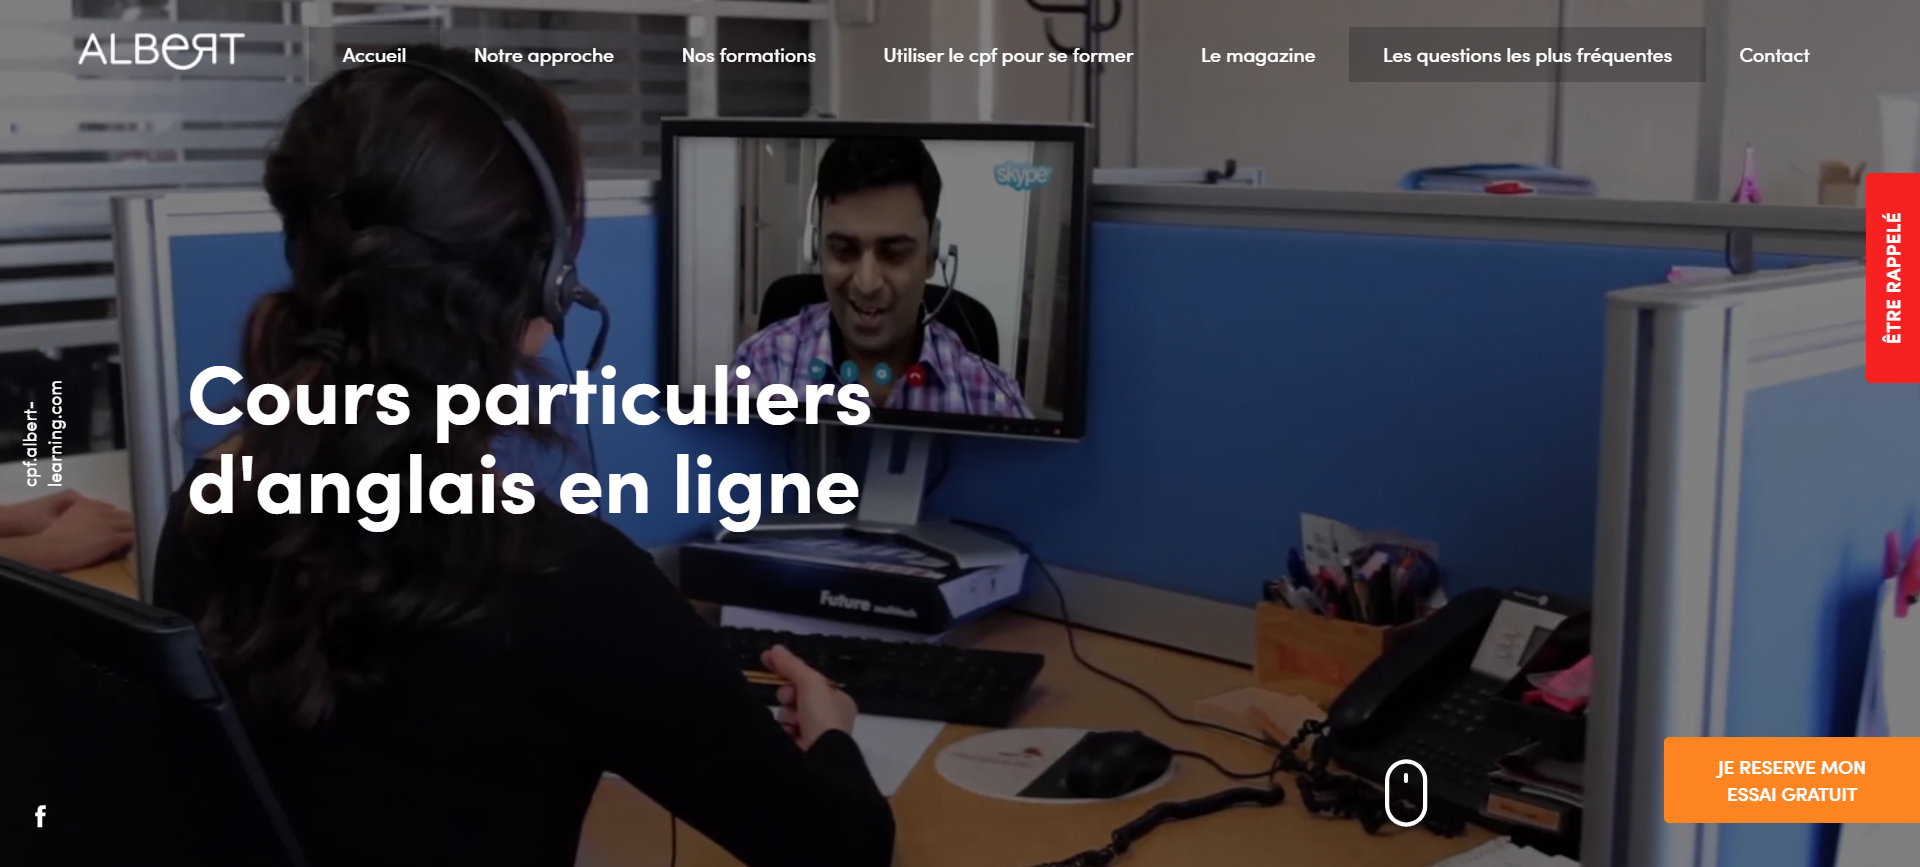 Création de site internet pour un centre de formation de cours d'anglais à Marseille - Albert Learning